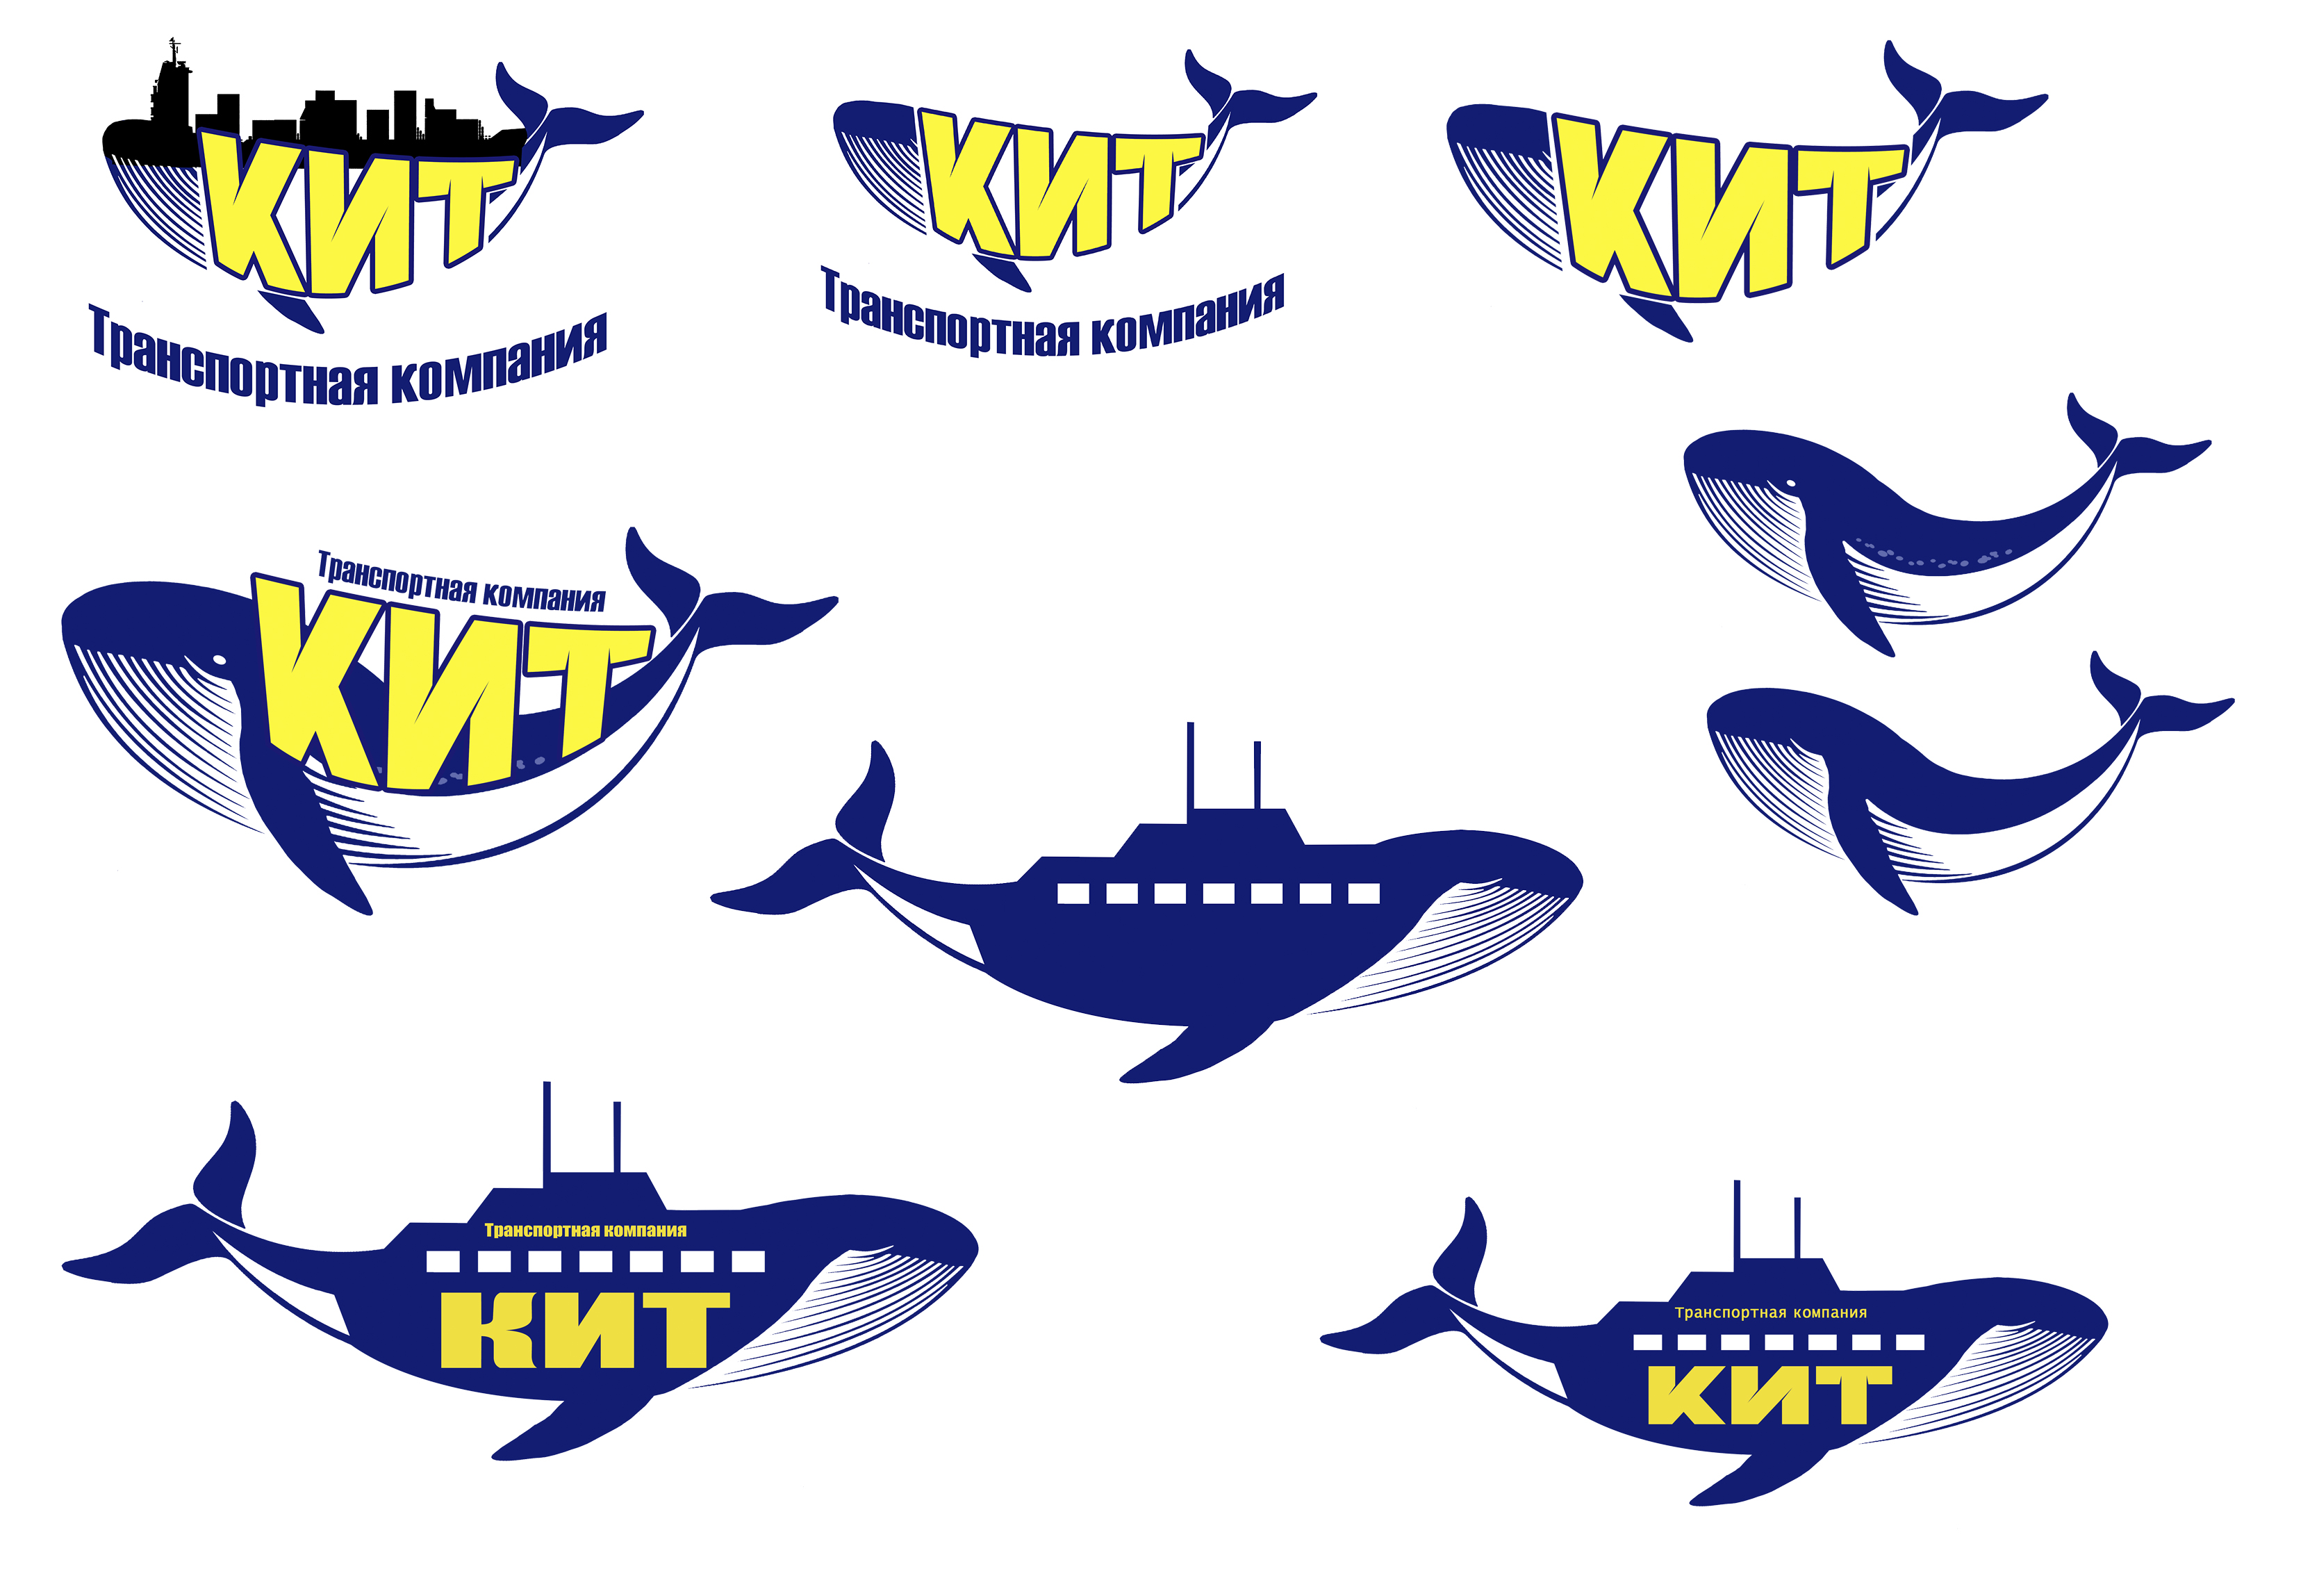 Тк компания кит. Кит транспортная компания логотип. ТК кит логотип транспортная компания. Значок ТК кит. Транспортная компания кит GTD логотип.